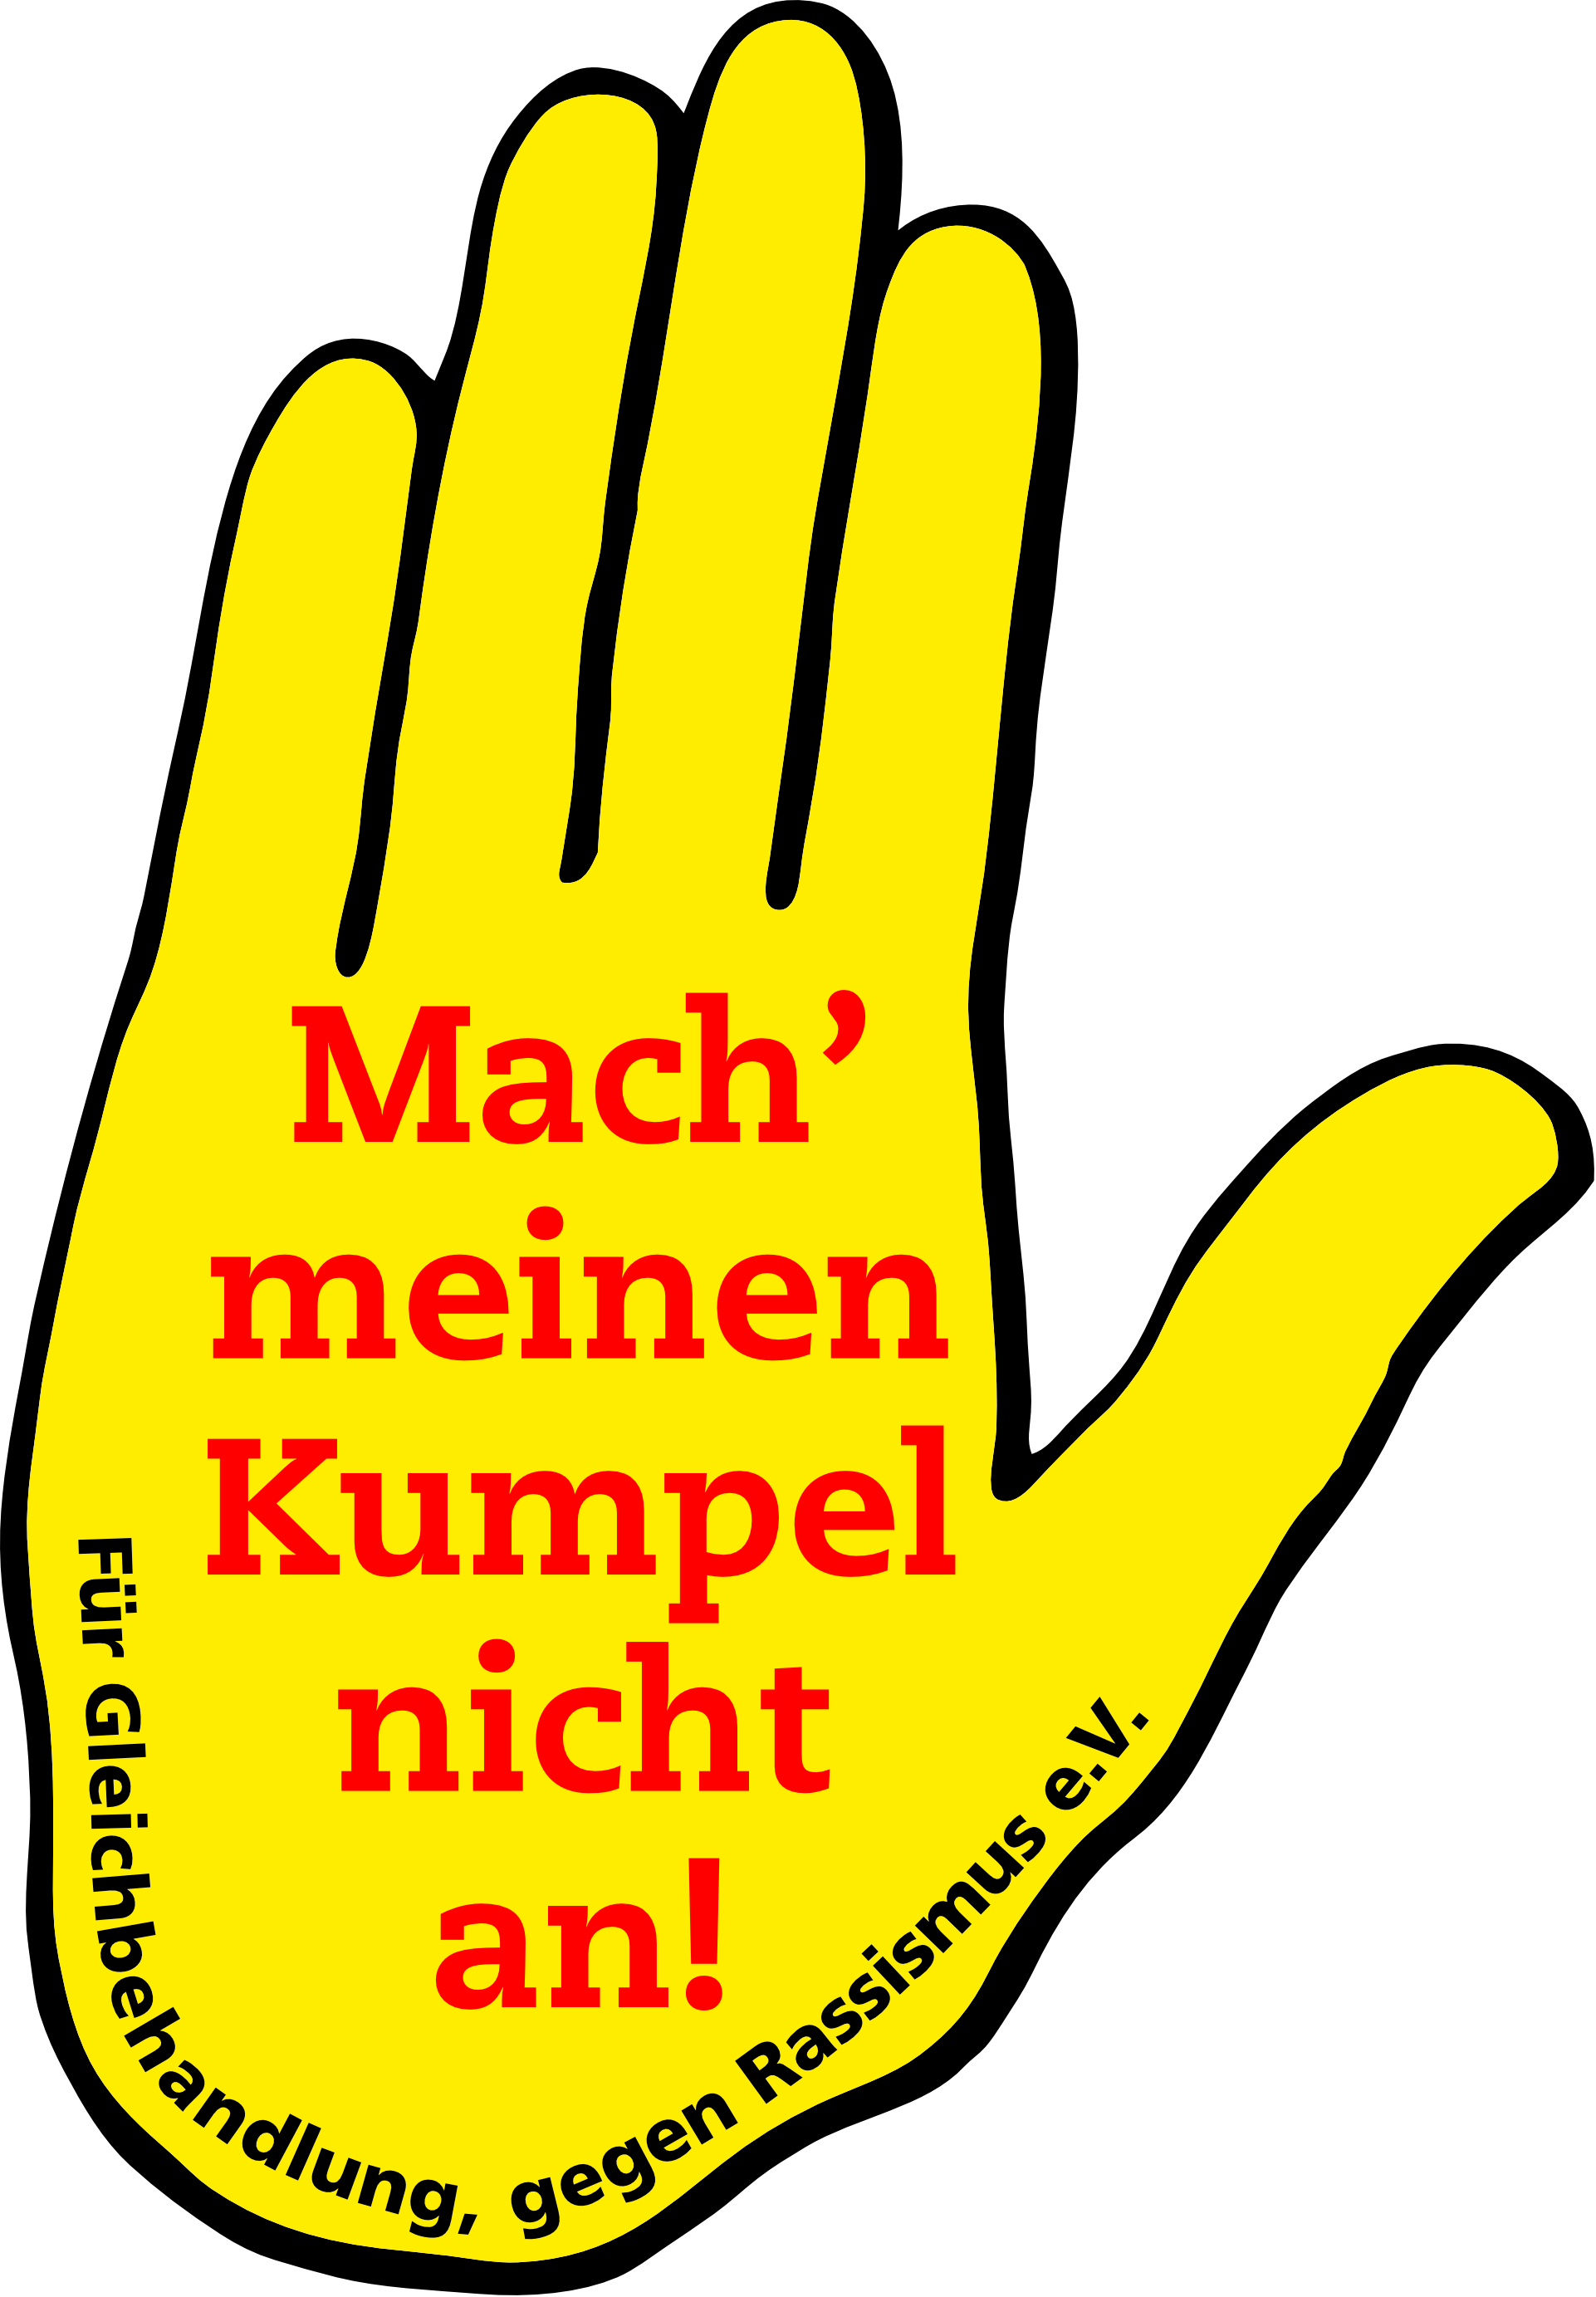 Logo des Vereins Gelbe Hand: es ist eine gelbe Hand auf der steht "Mach meinen Kumpel nicht an! Für Gleichbehandlung, gegen Rassismus e.V.".